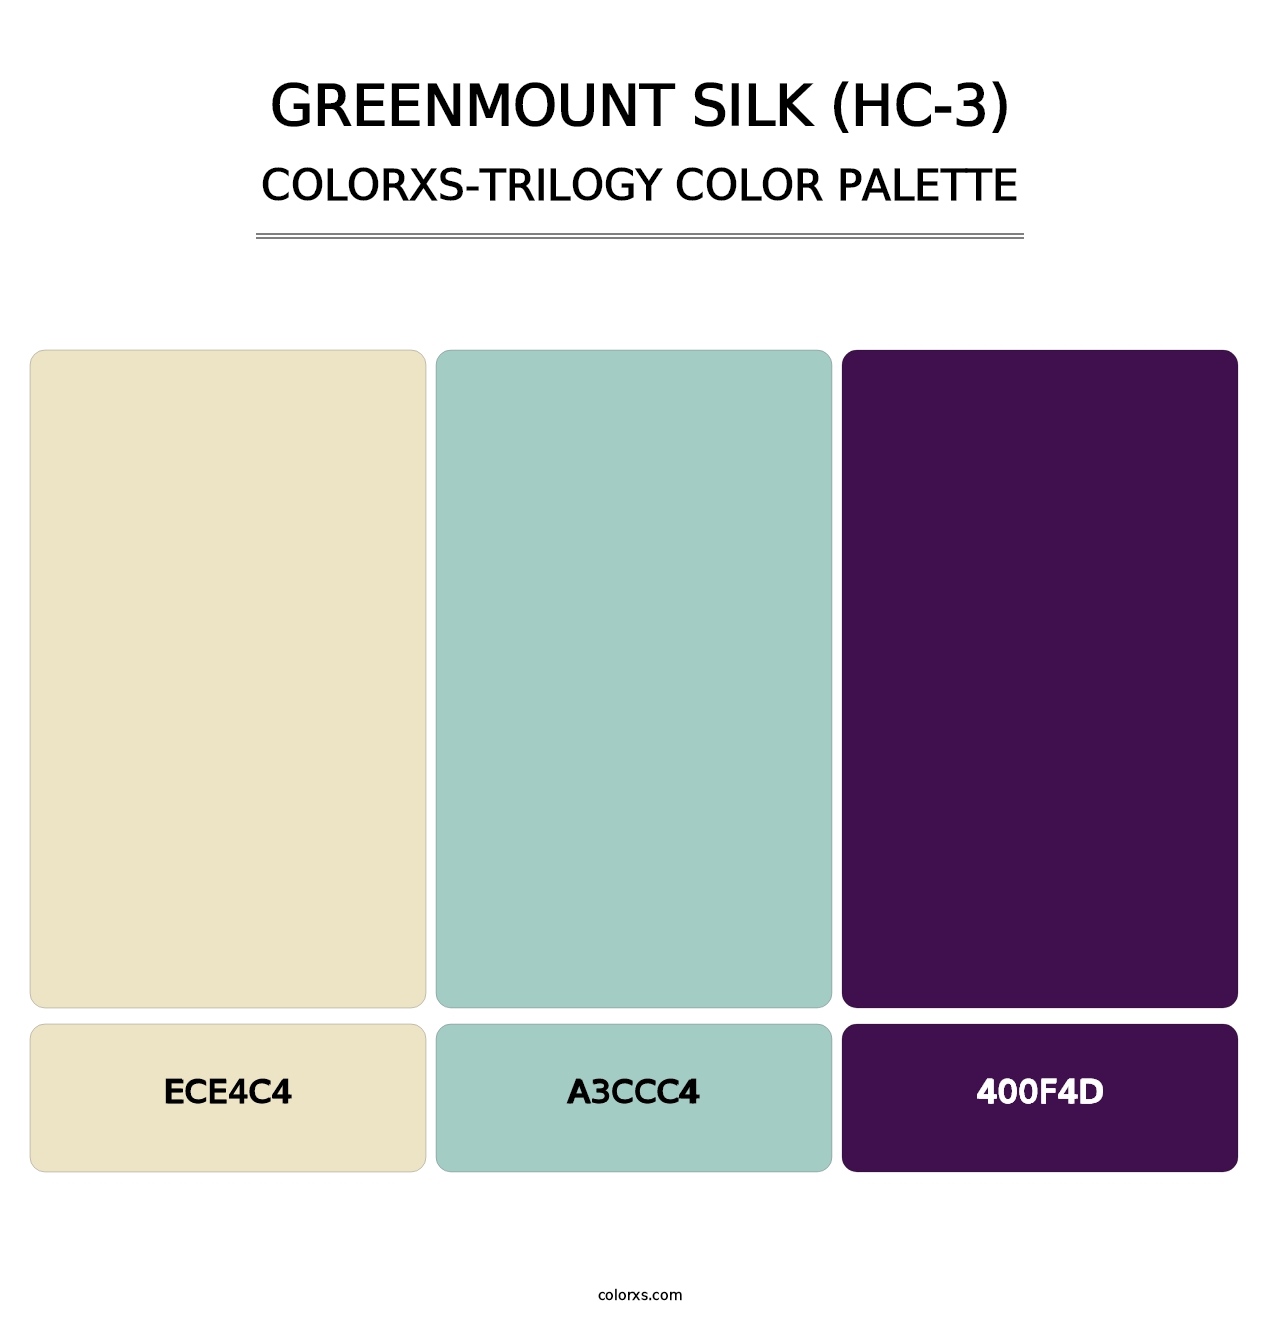 Greenmount Silk (HC-3) - Colorxs Trilogy Palette